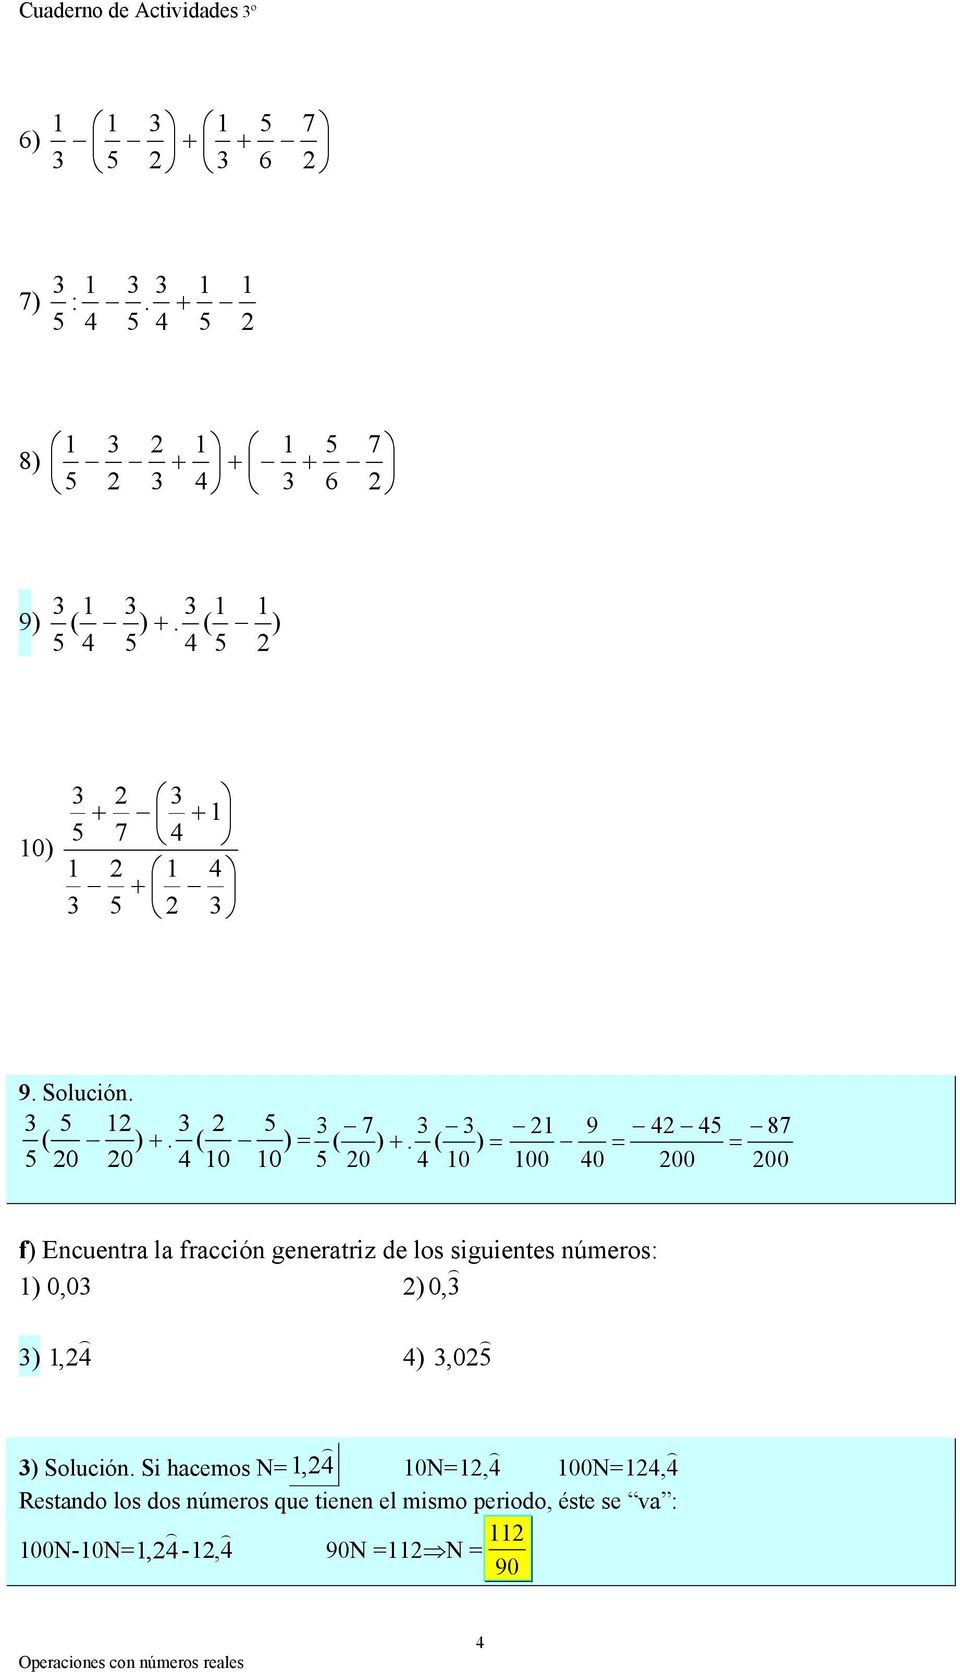 ) = 0 0 0 0 0 0 9 8 = = 00 0 00 00 f) Encuentra la fracción generatriz de los